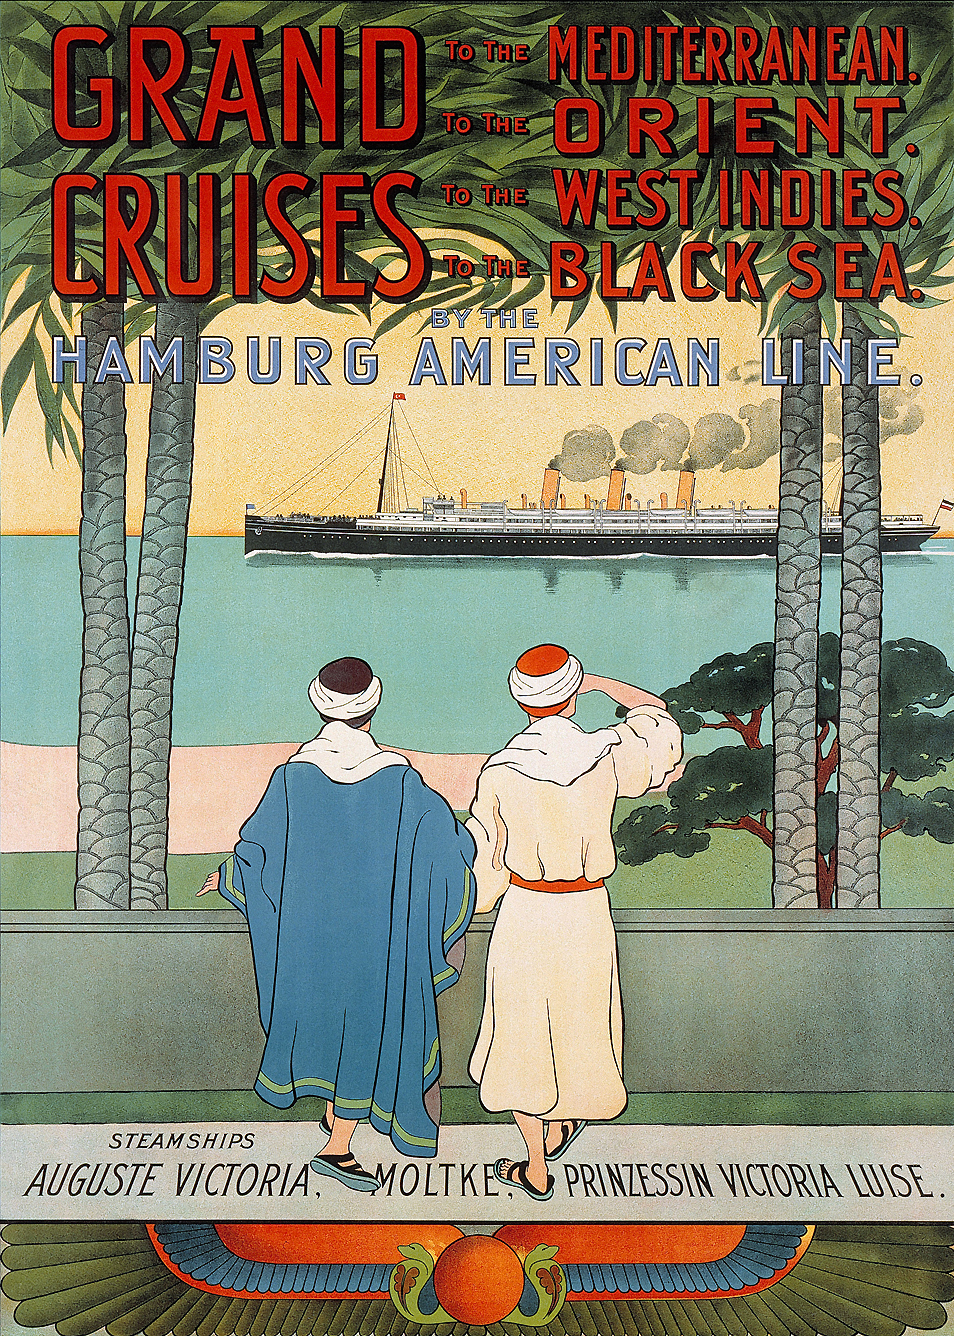 20205 189x Poster einer spaeteren Reise mit dem Schiff